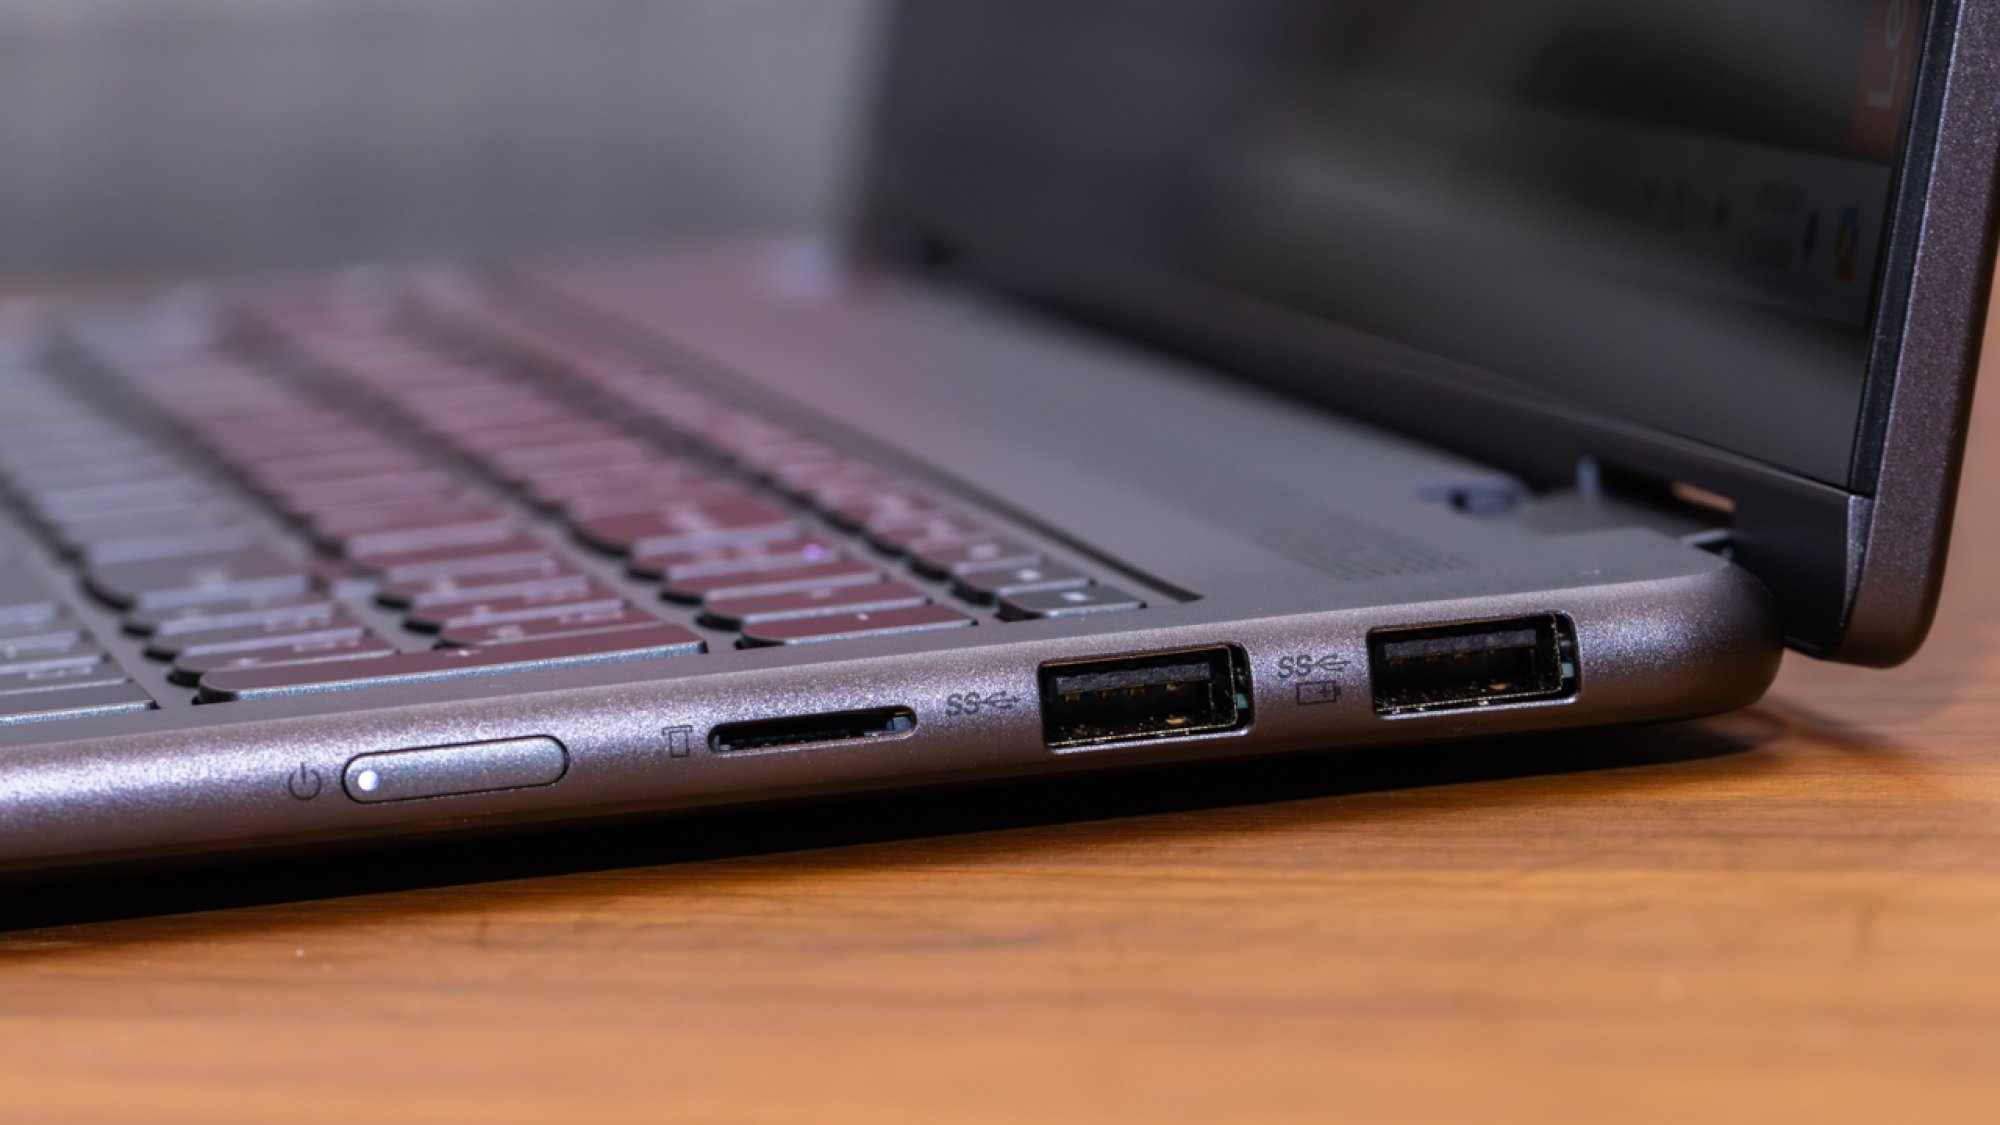 Lenovo Yoga 7i 2 in 1 laptop ports